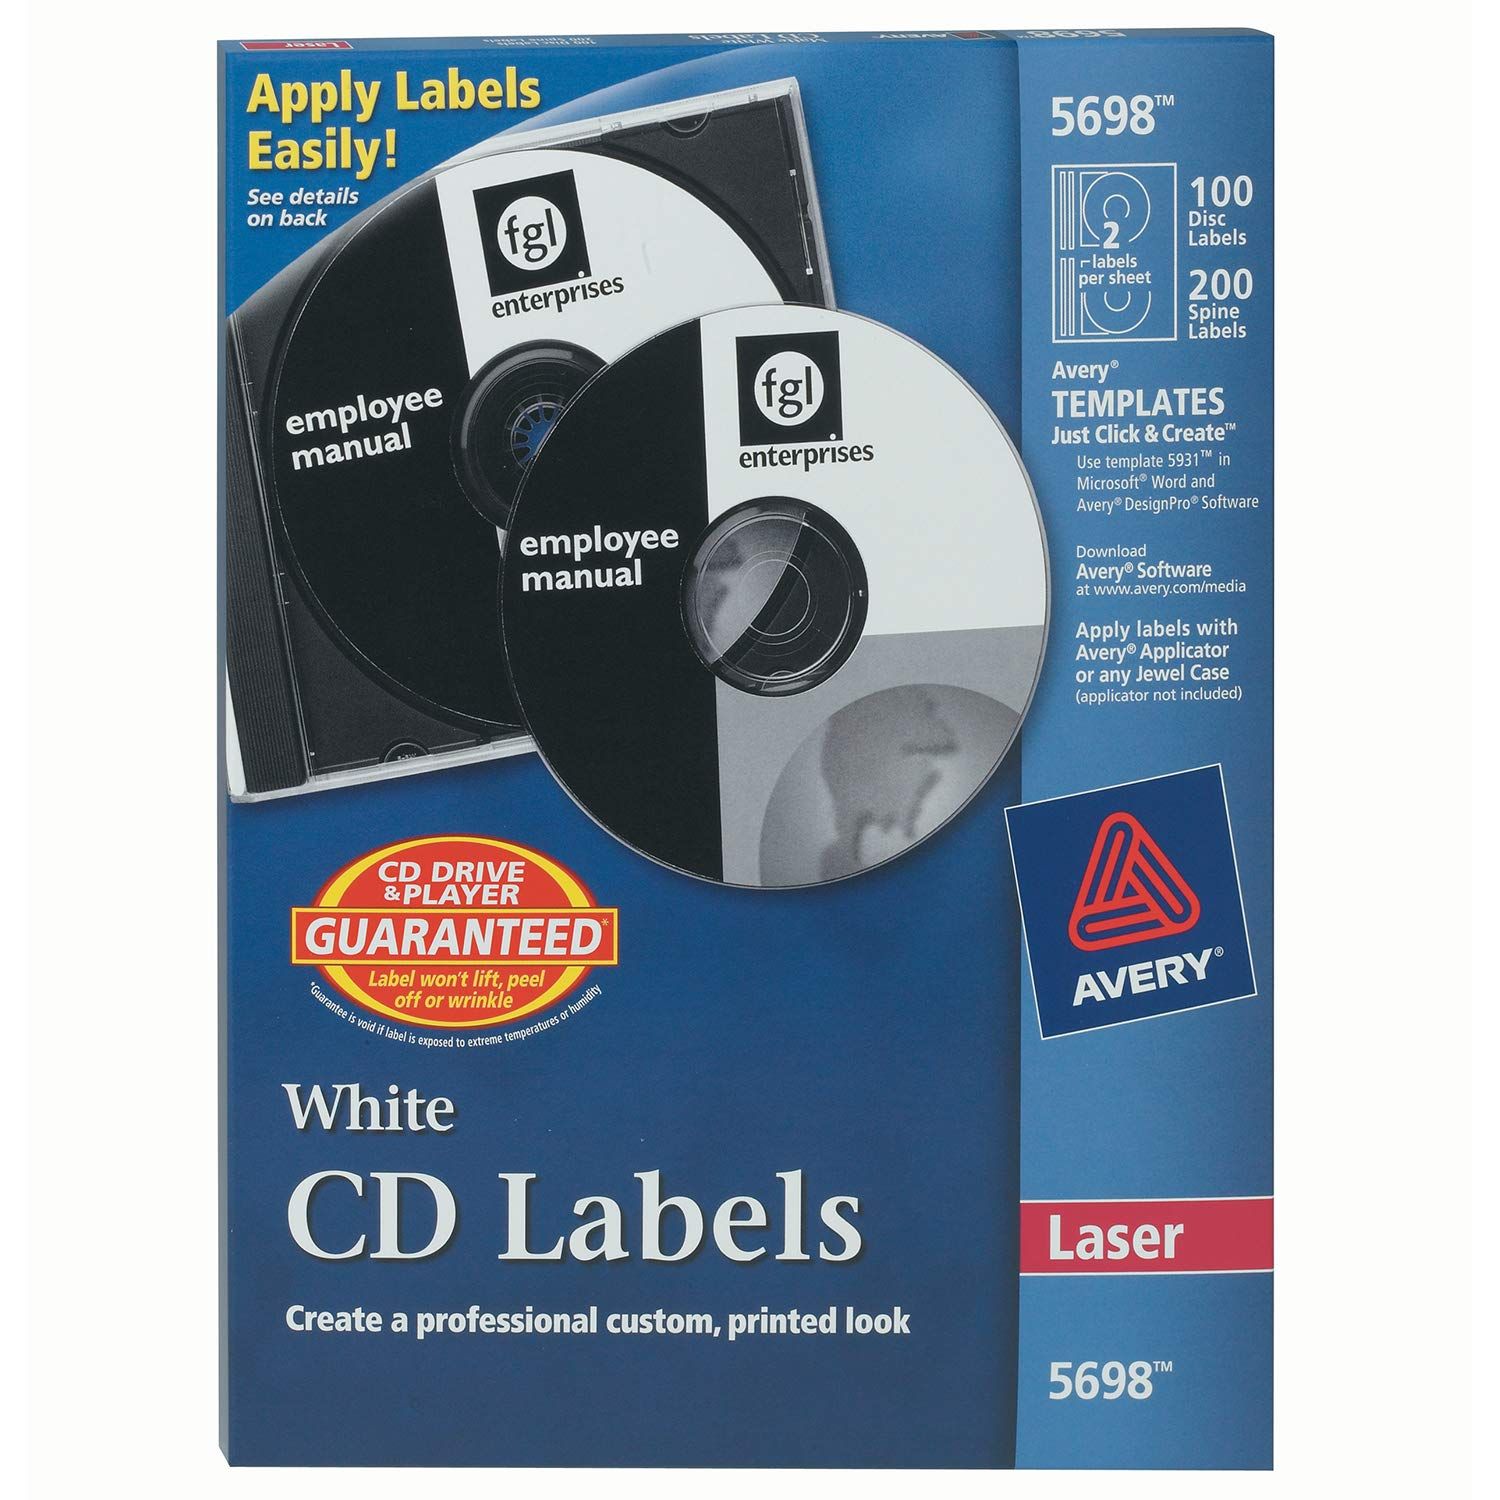 Etiqueta para cd tecnología laser AVERY  Con 100 etiquetas y 200 etiquetas para lomos                                                                                                                                                                                                                    color blanco                             - AVERY